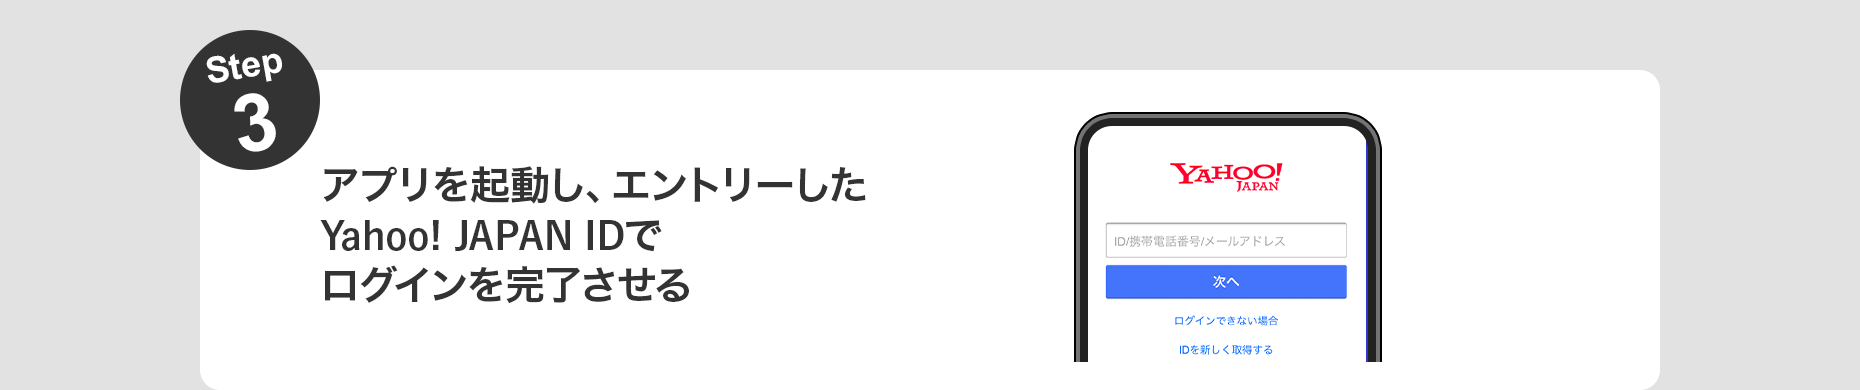 Step3 アプリを起動し、エントリーしたYahoo! JAPAN IDでログインを完了させる